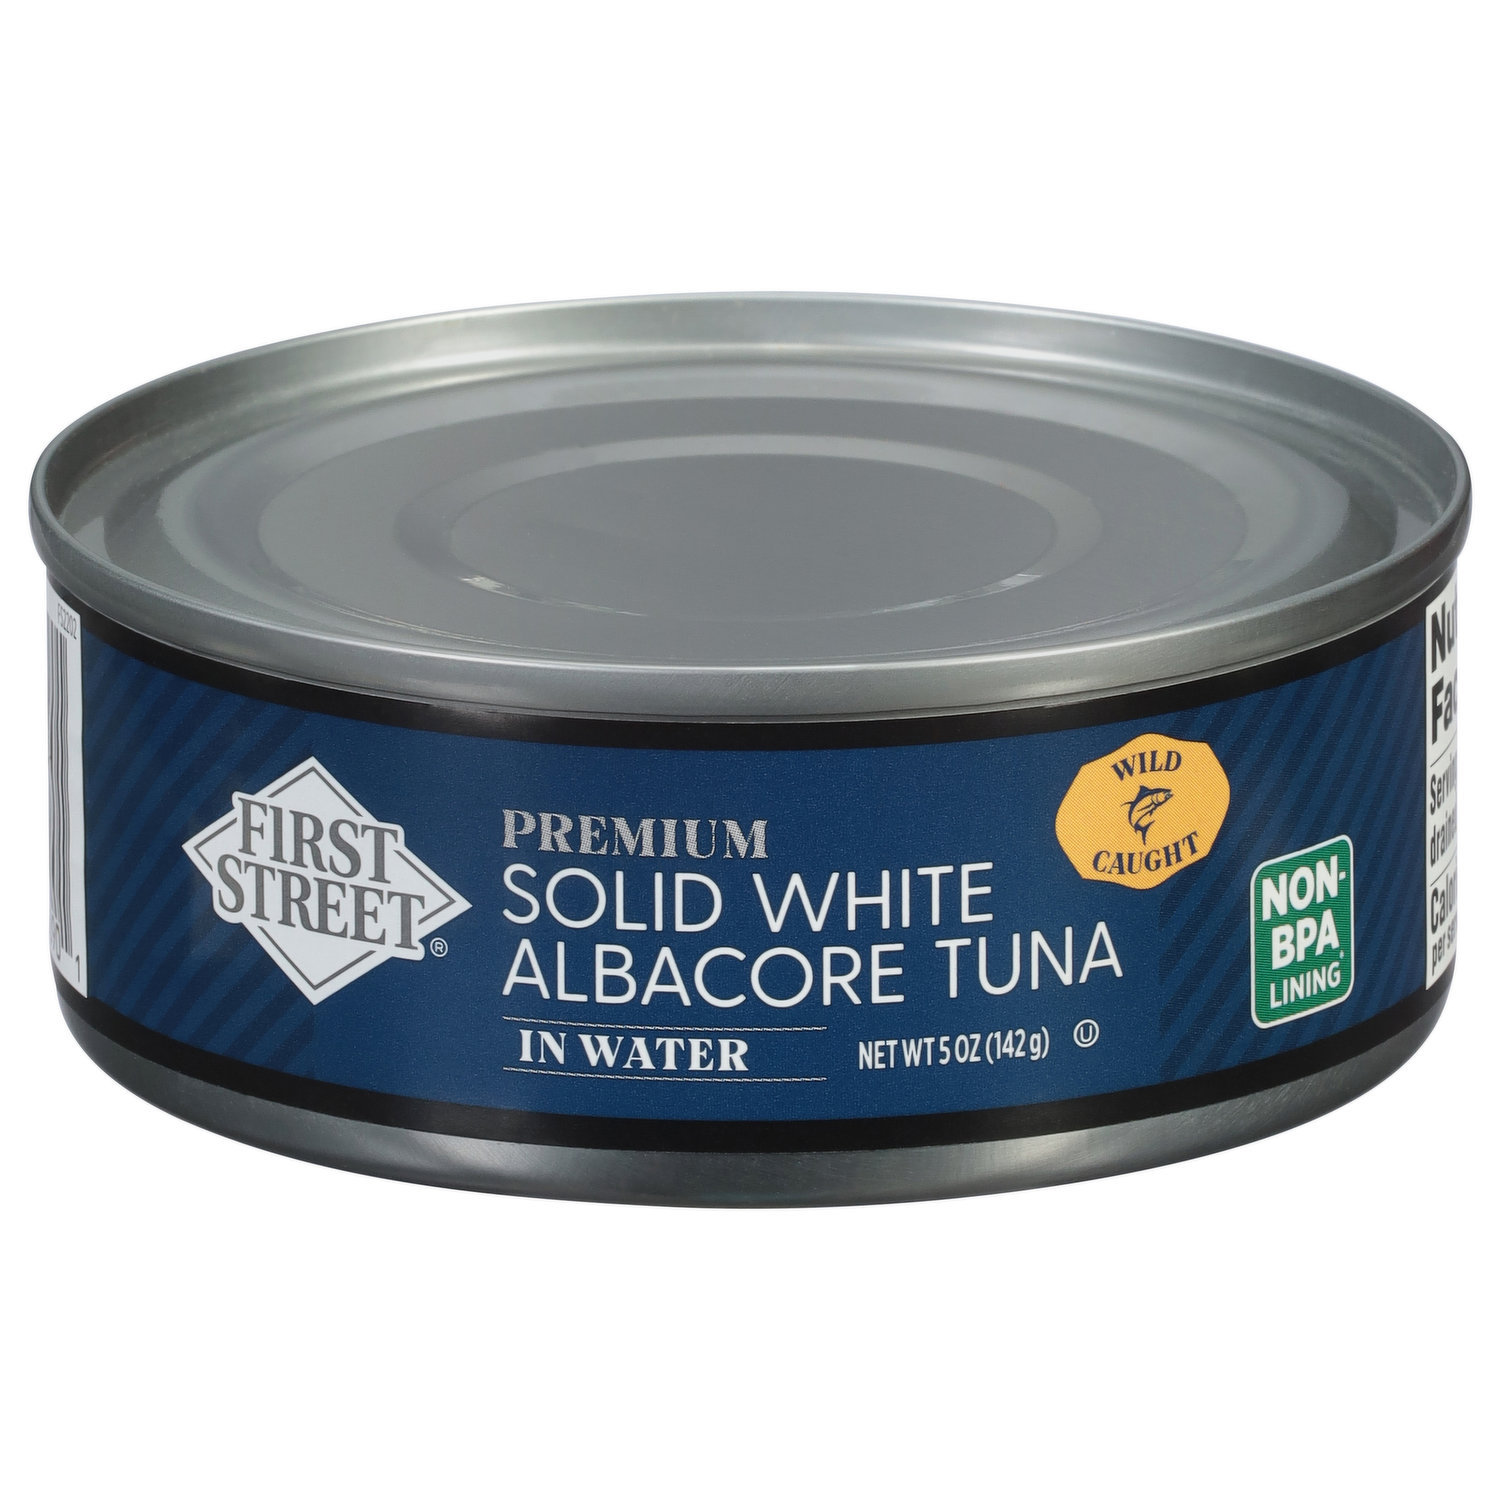 Premium Albacore Tuna 3.75 oz